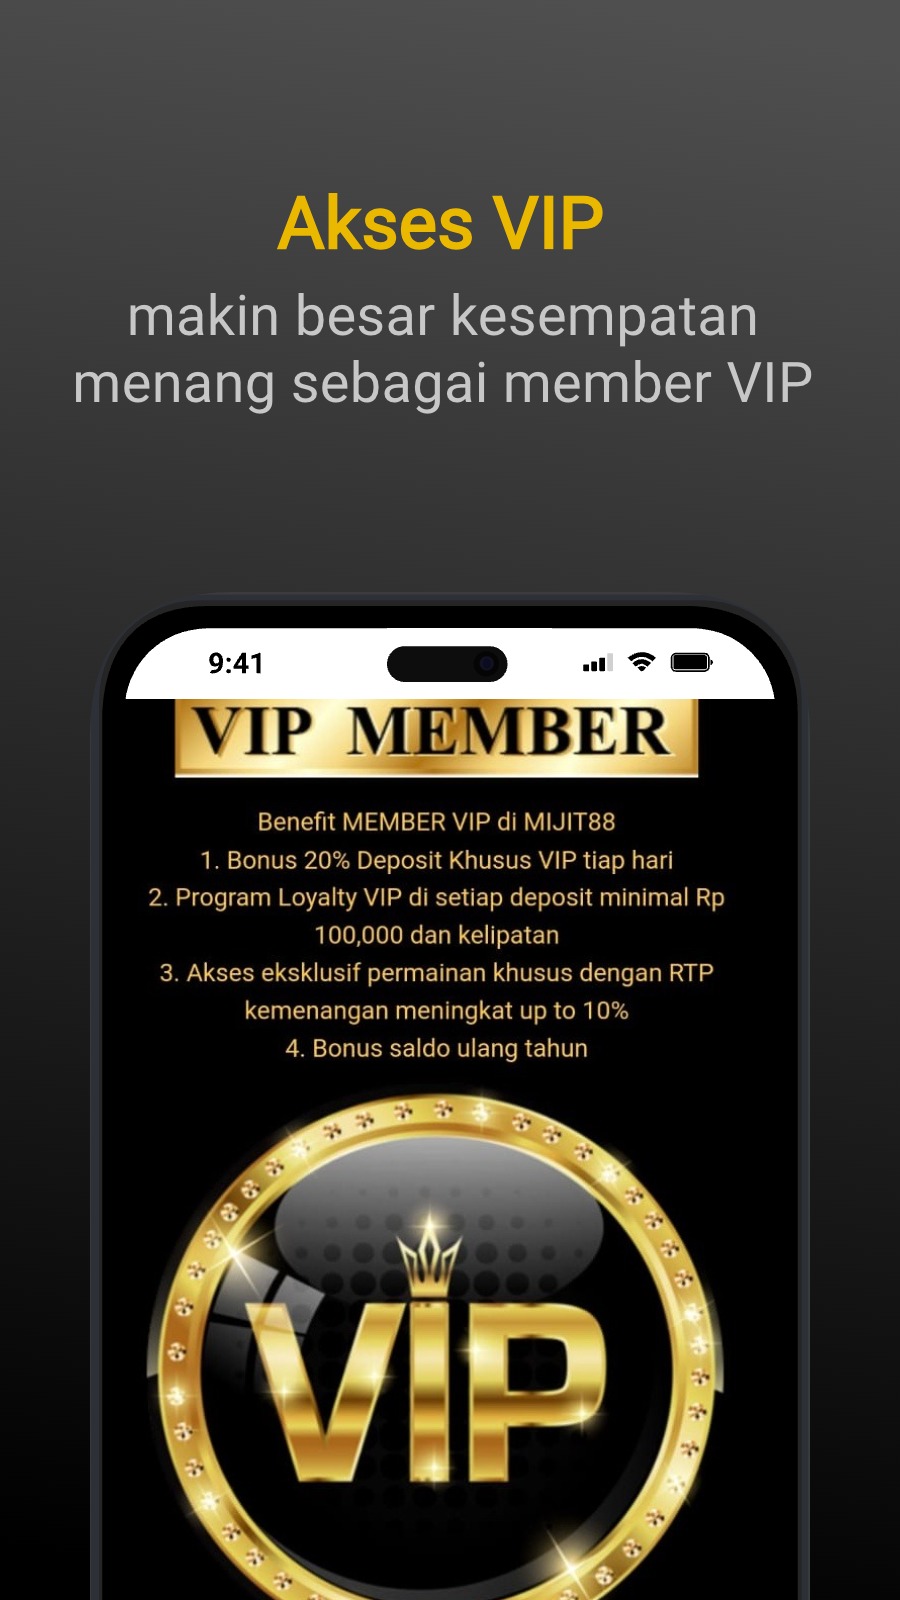 Akses VIP - makin besar kesempatan menang sebagai member VIP